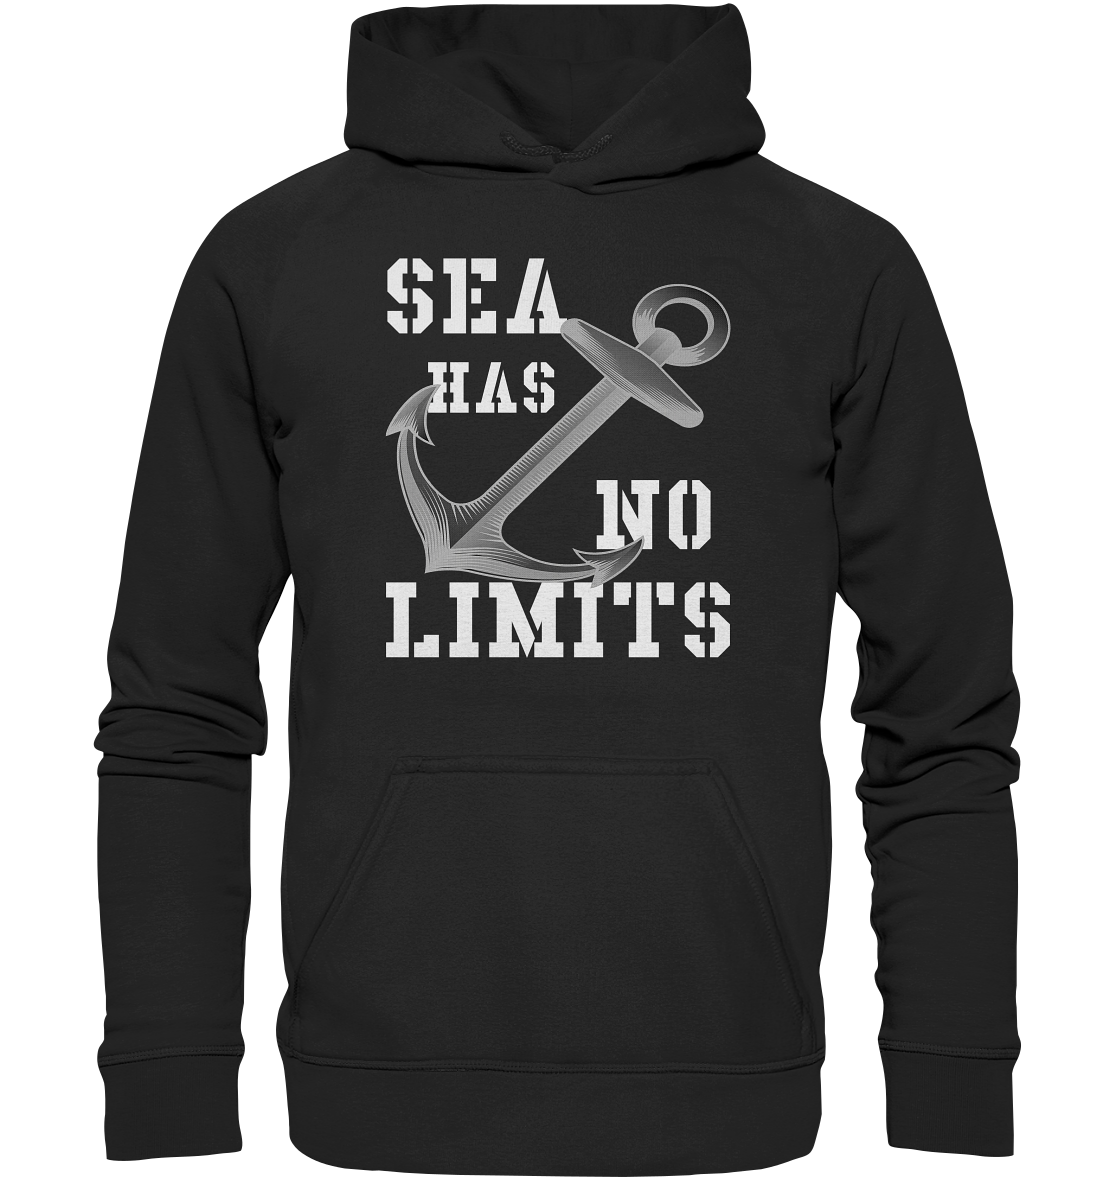 Sea has no limits - Basic Unisex Hoodie XL